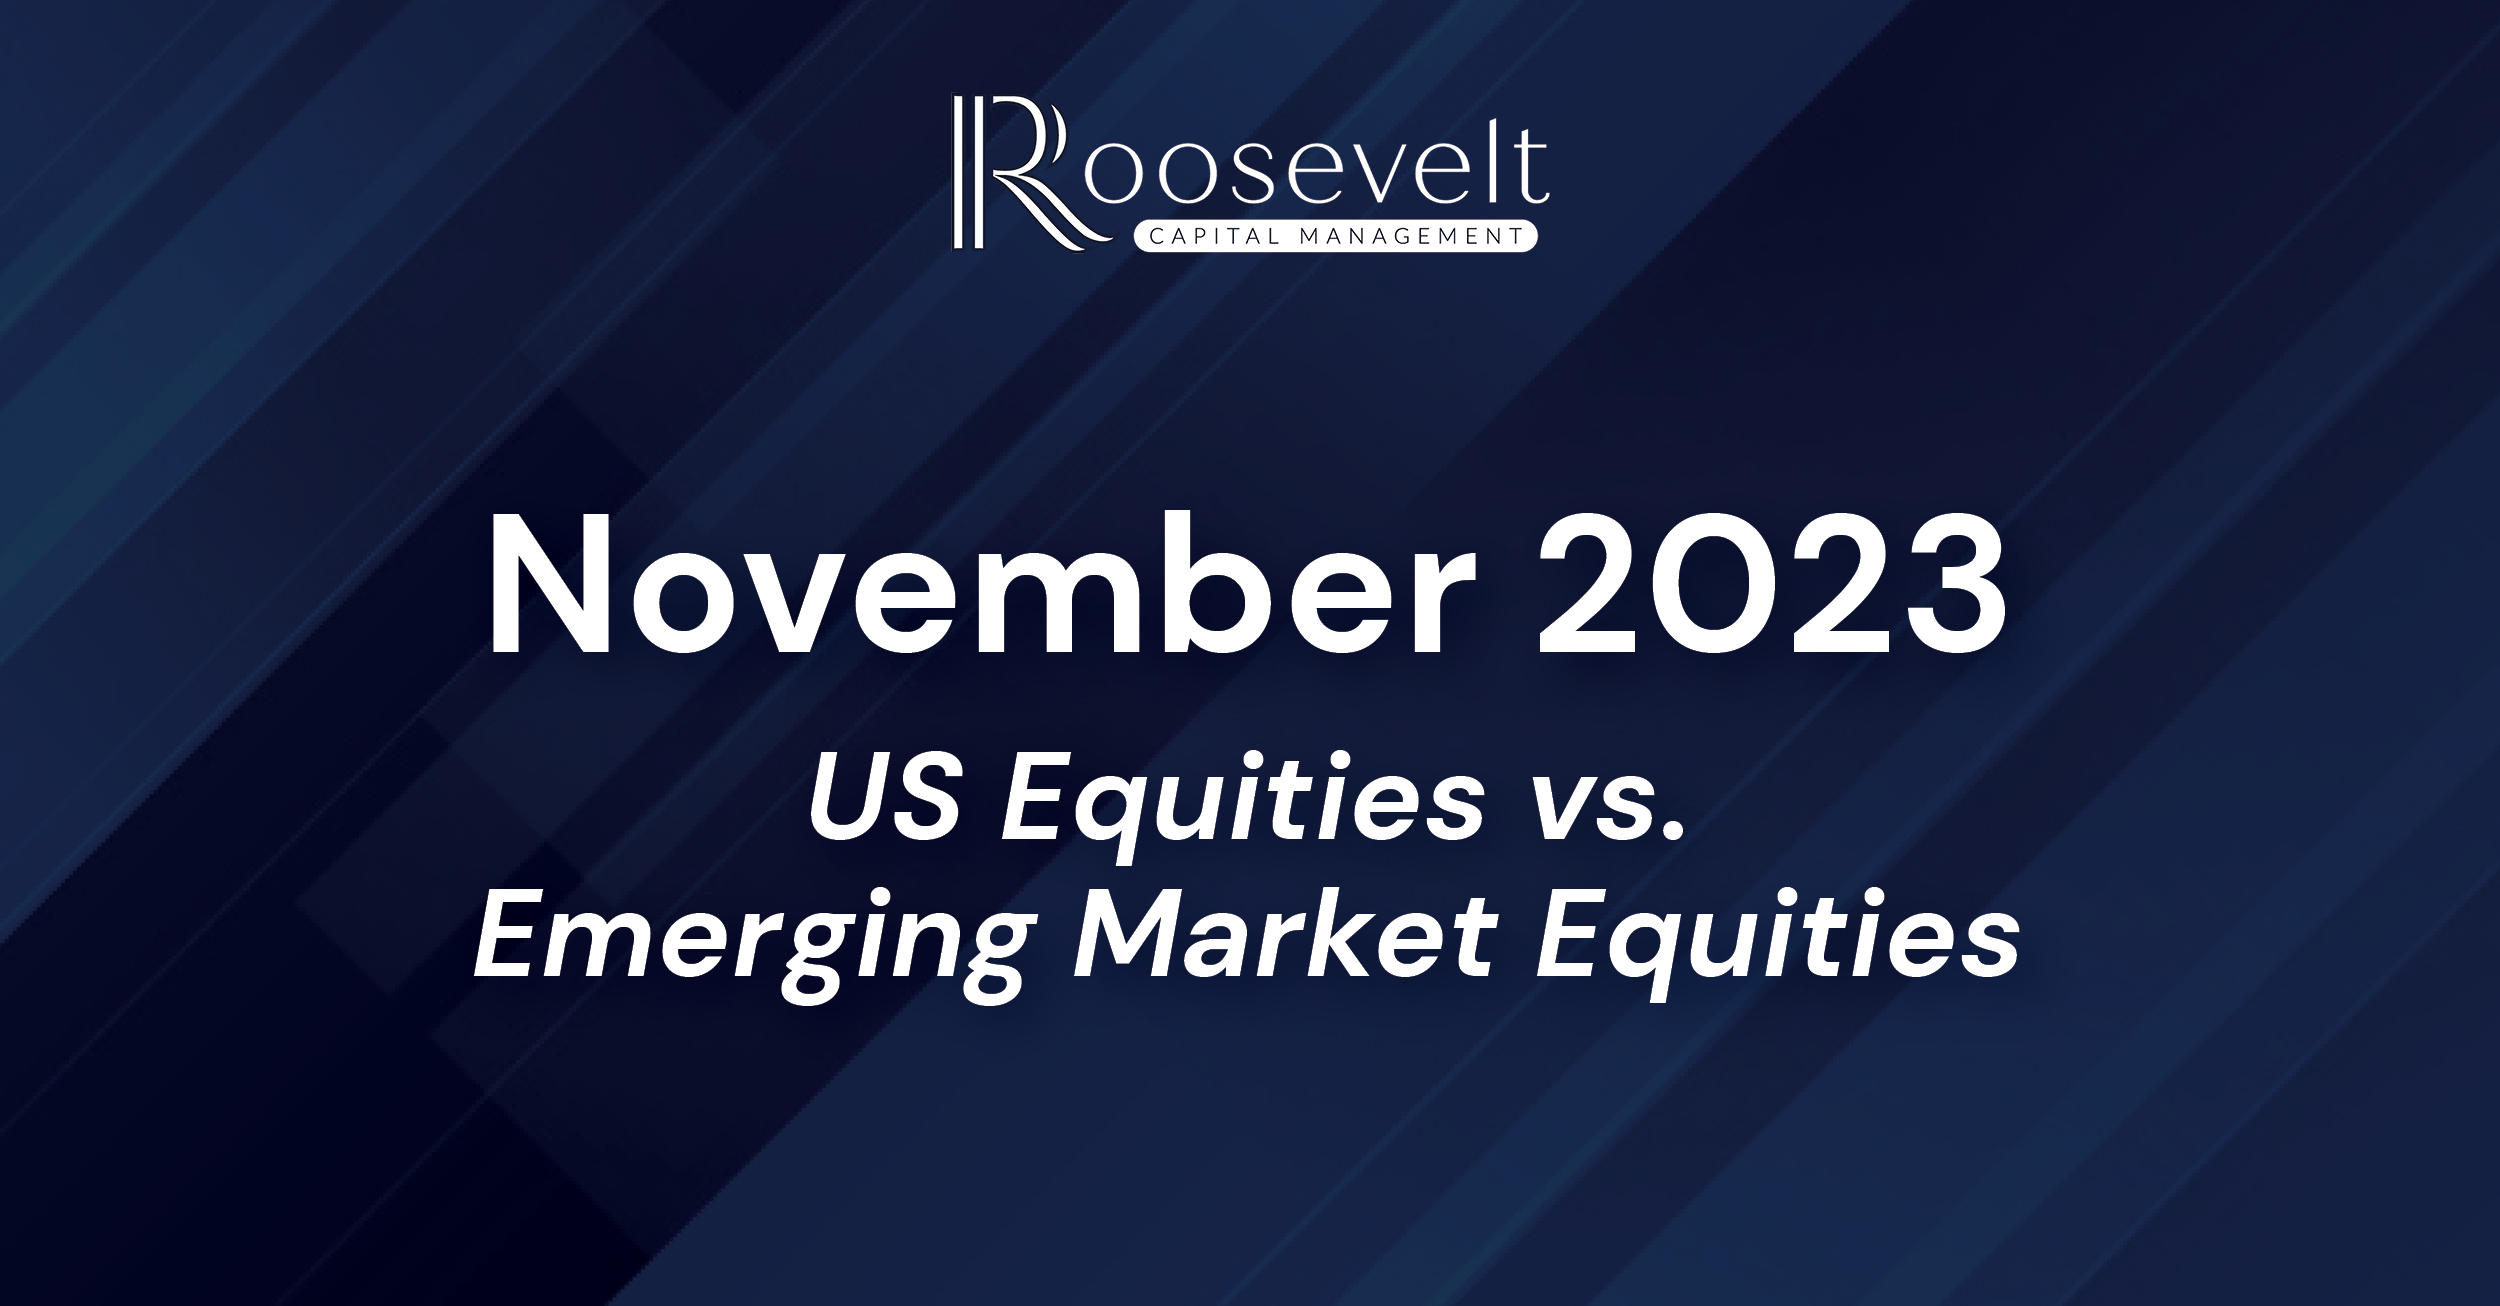 November 2023 - US Equities vs. Emerging Market Equities